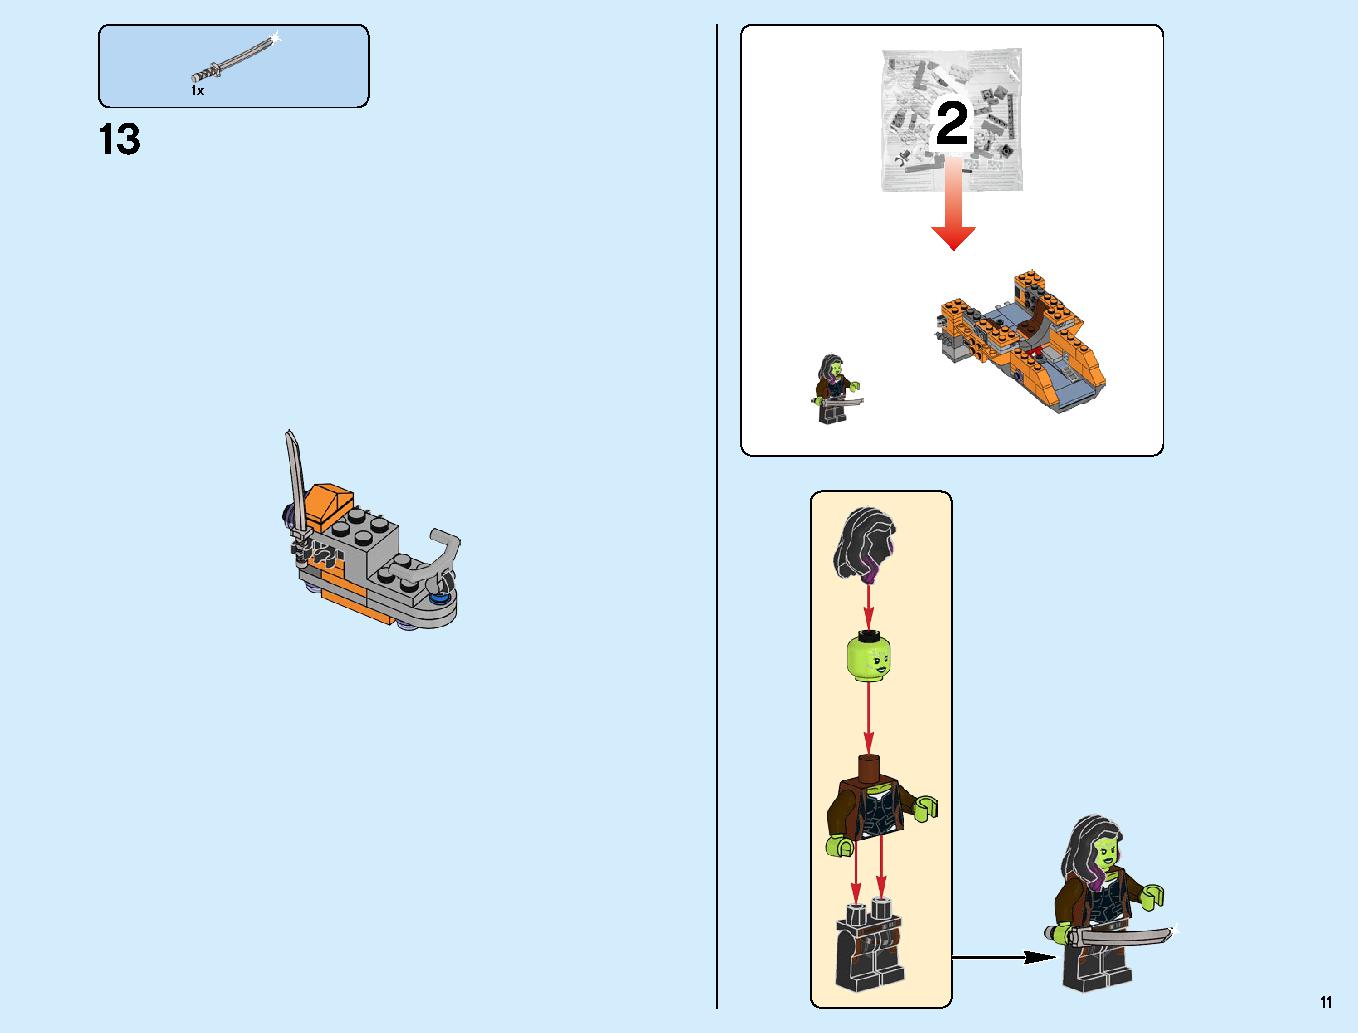 어벤져스 타노스: 최후의 전투 76107 레고 세트 제품정보 레고 조립설명서 11 page